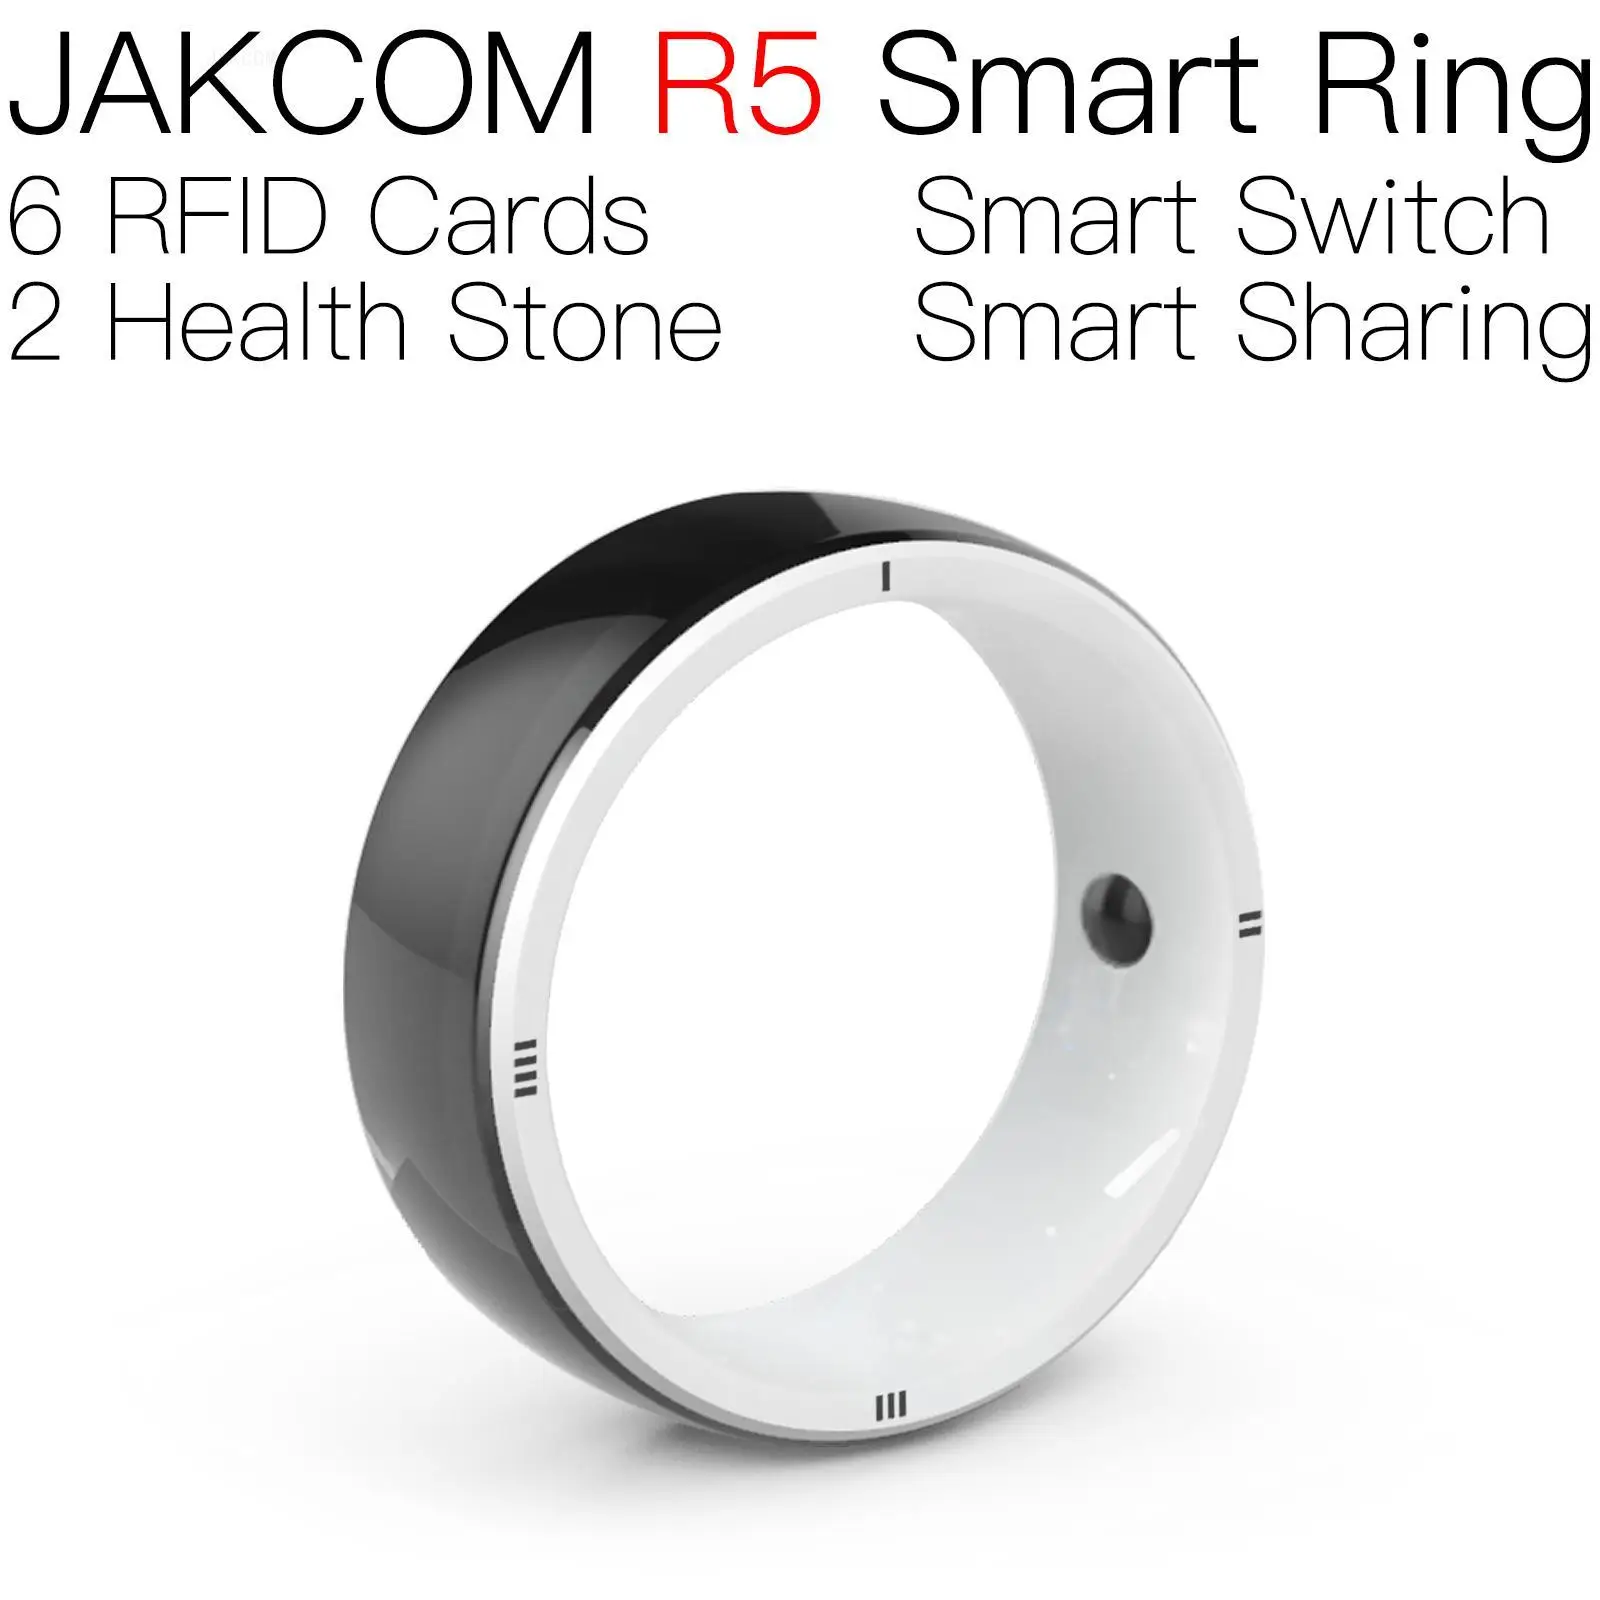 

Умное кольцо JAKCOM R5 лучше, чем умный ИК-накопитель, Официальный магазин часов, оригинальный usb-убийца, машинка для стрижки ногтей